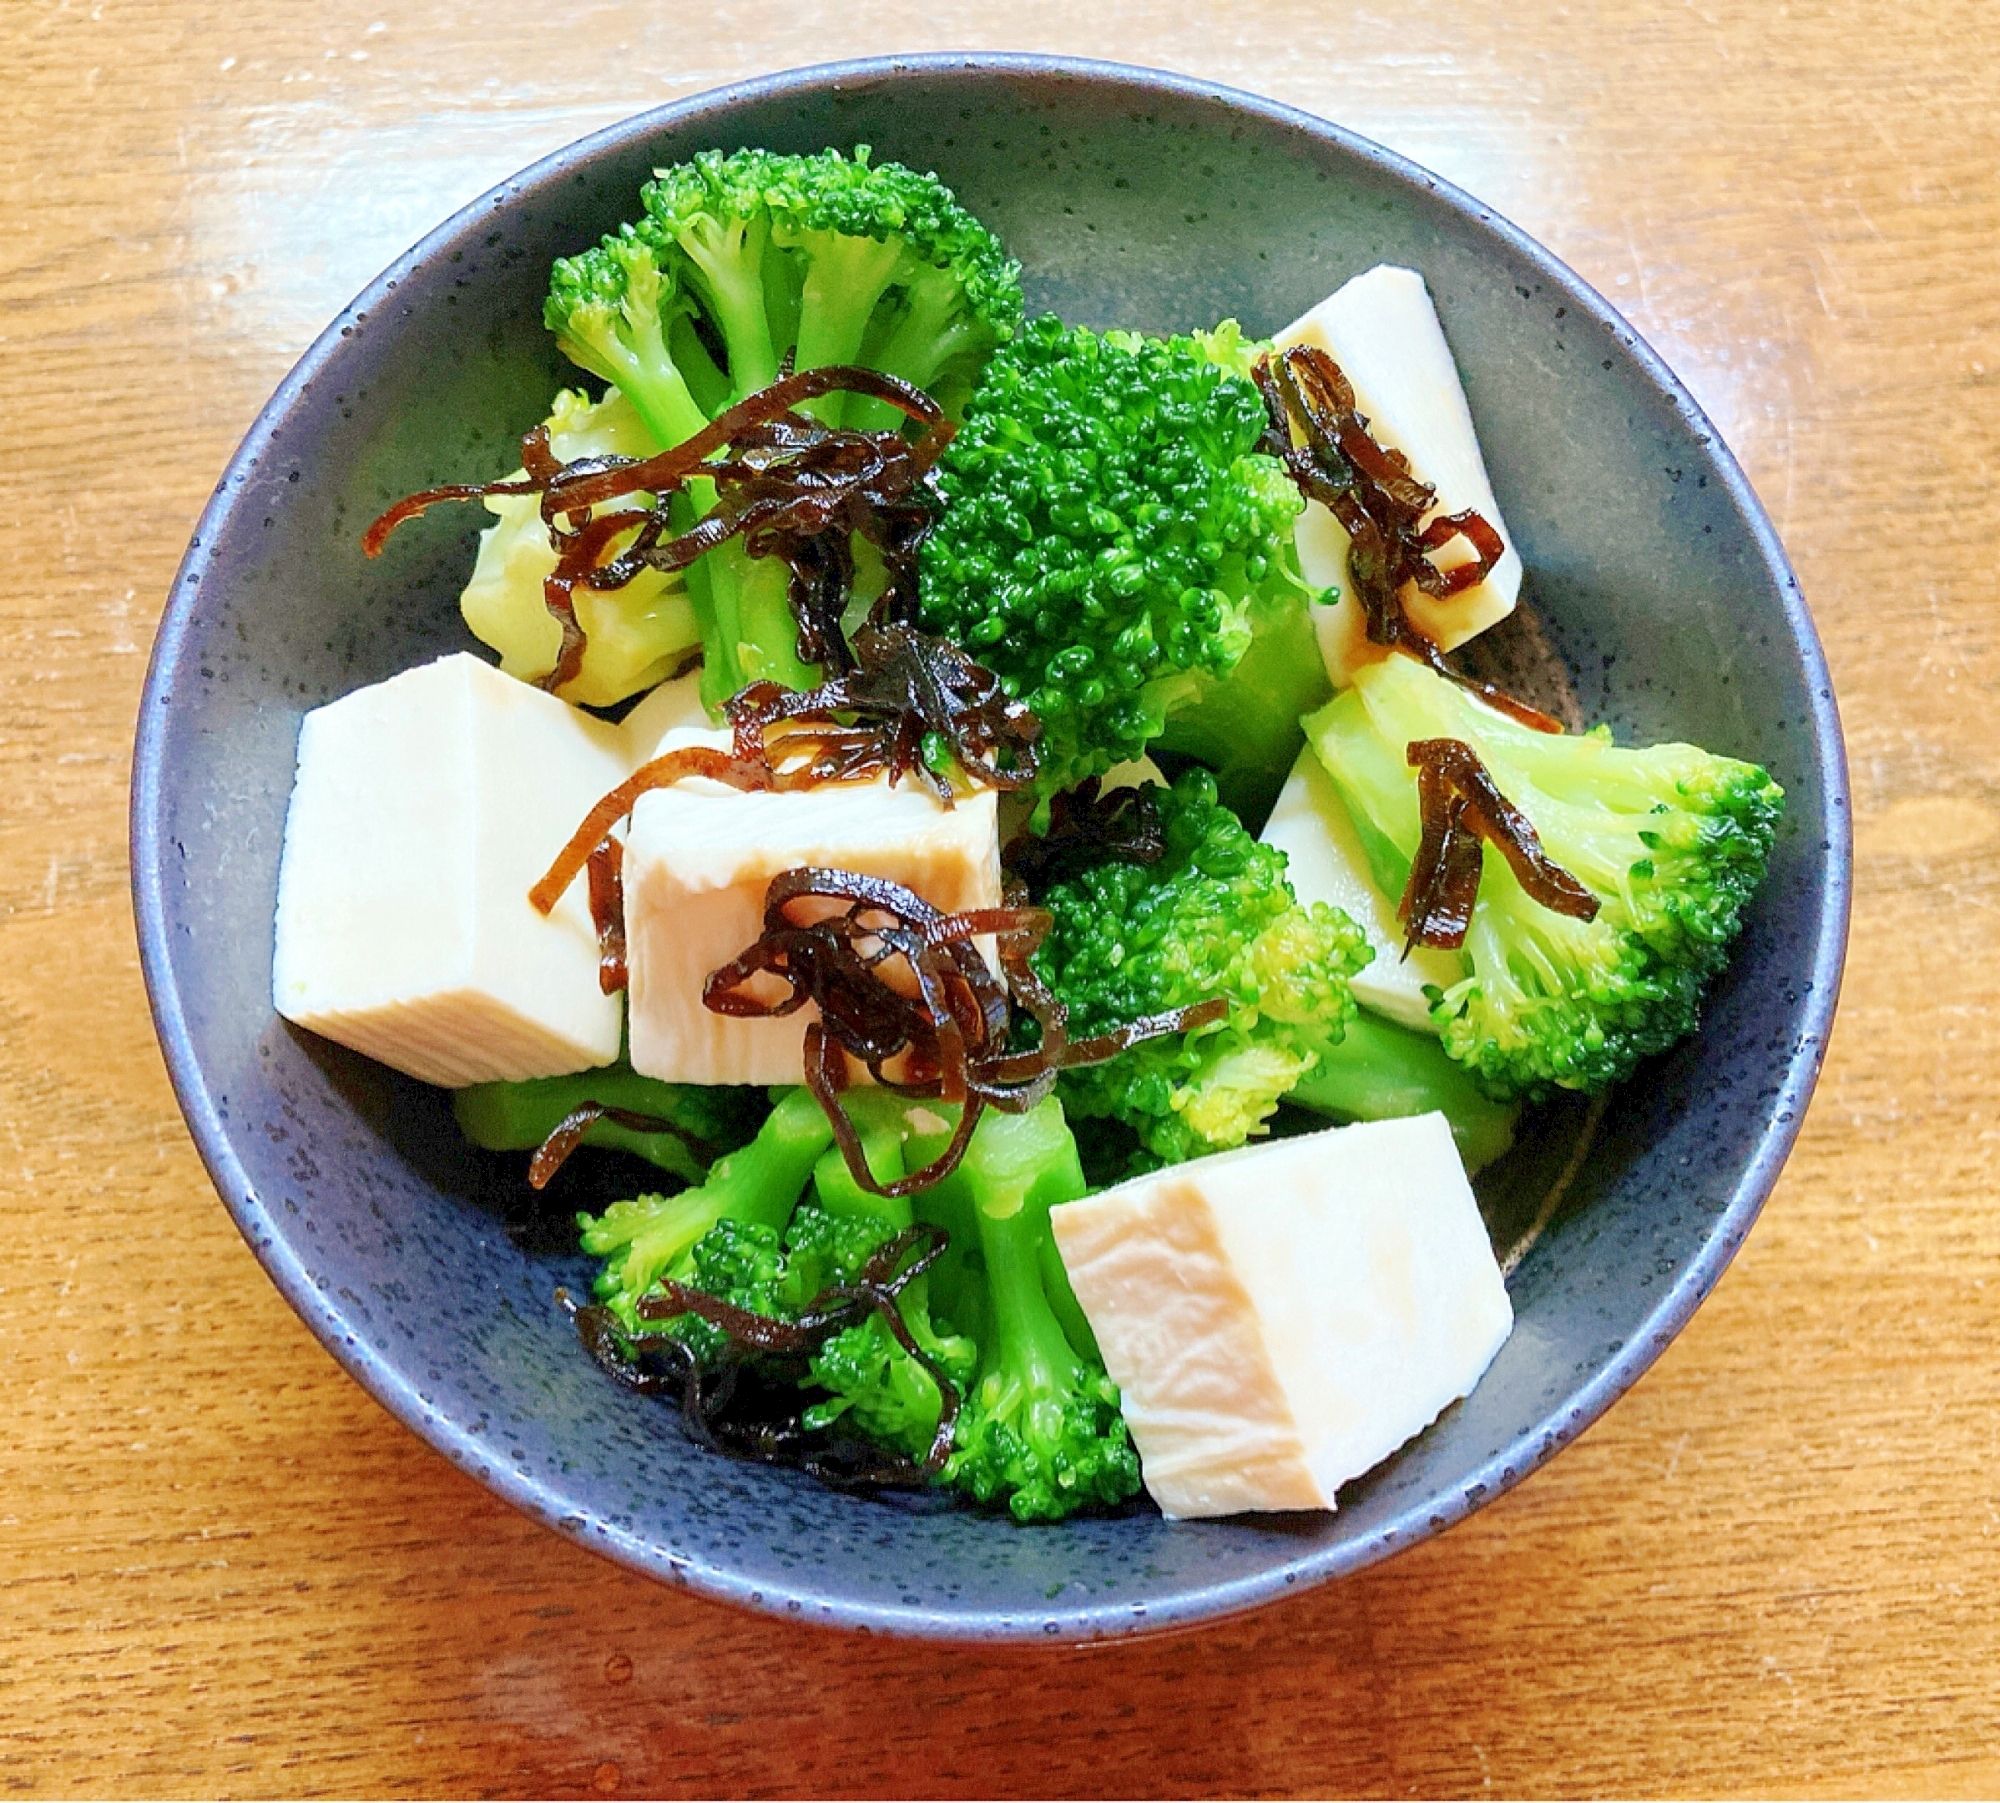 ブロッコリーと塩昆布と豆腐の和え物